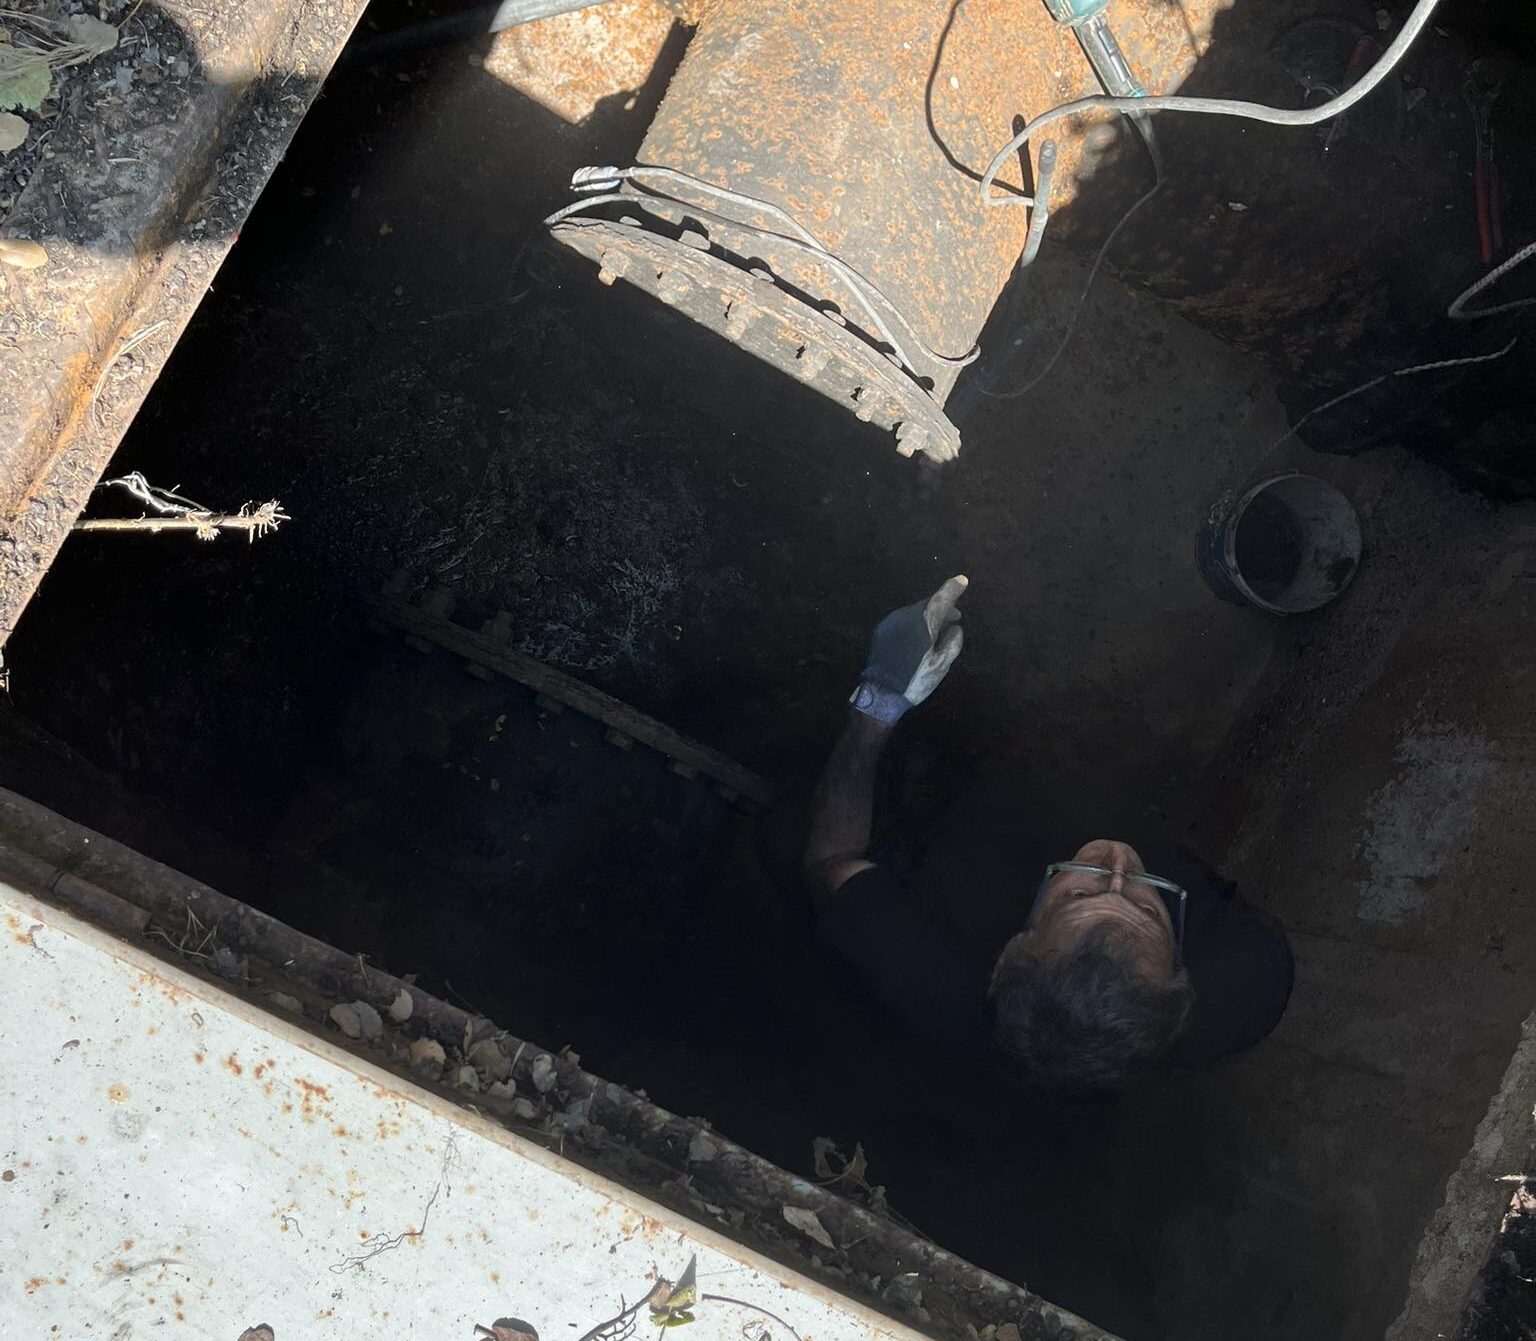 Καλαμάτα: Σε επιφυλακή οι υπηρεσίες για την υδροδότηση της πόλης – Κατασκευή νέας ανοξείδωτης δεξαμενής